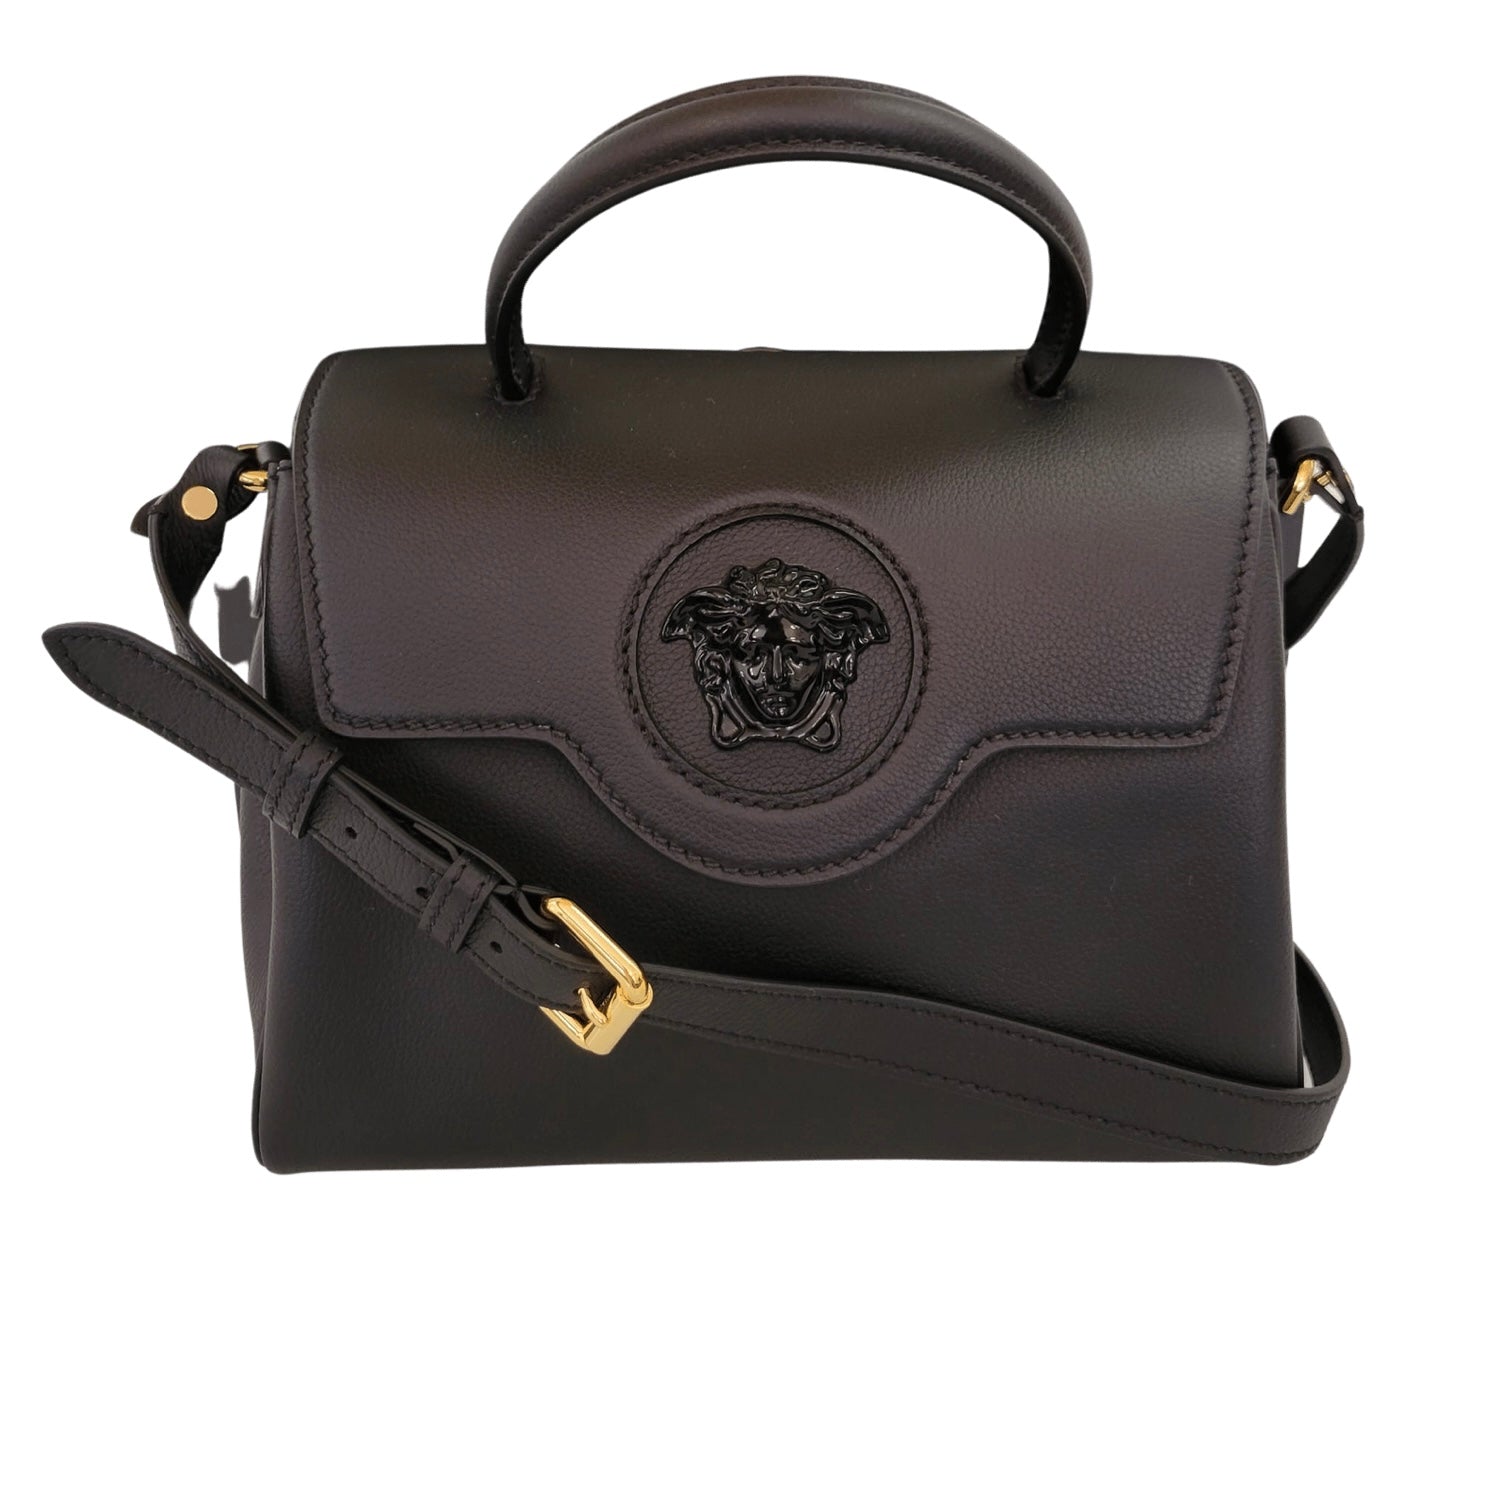 Best Deals for Versace Handbags Price List